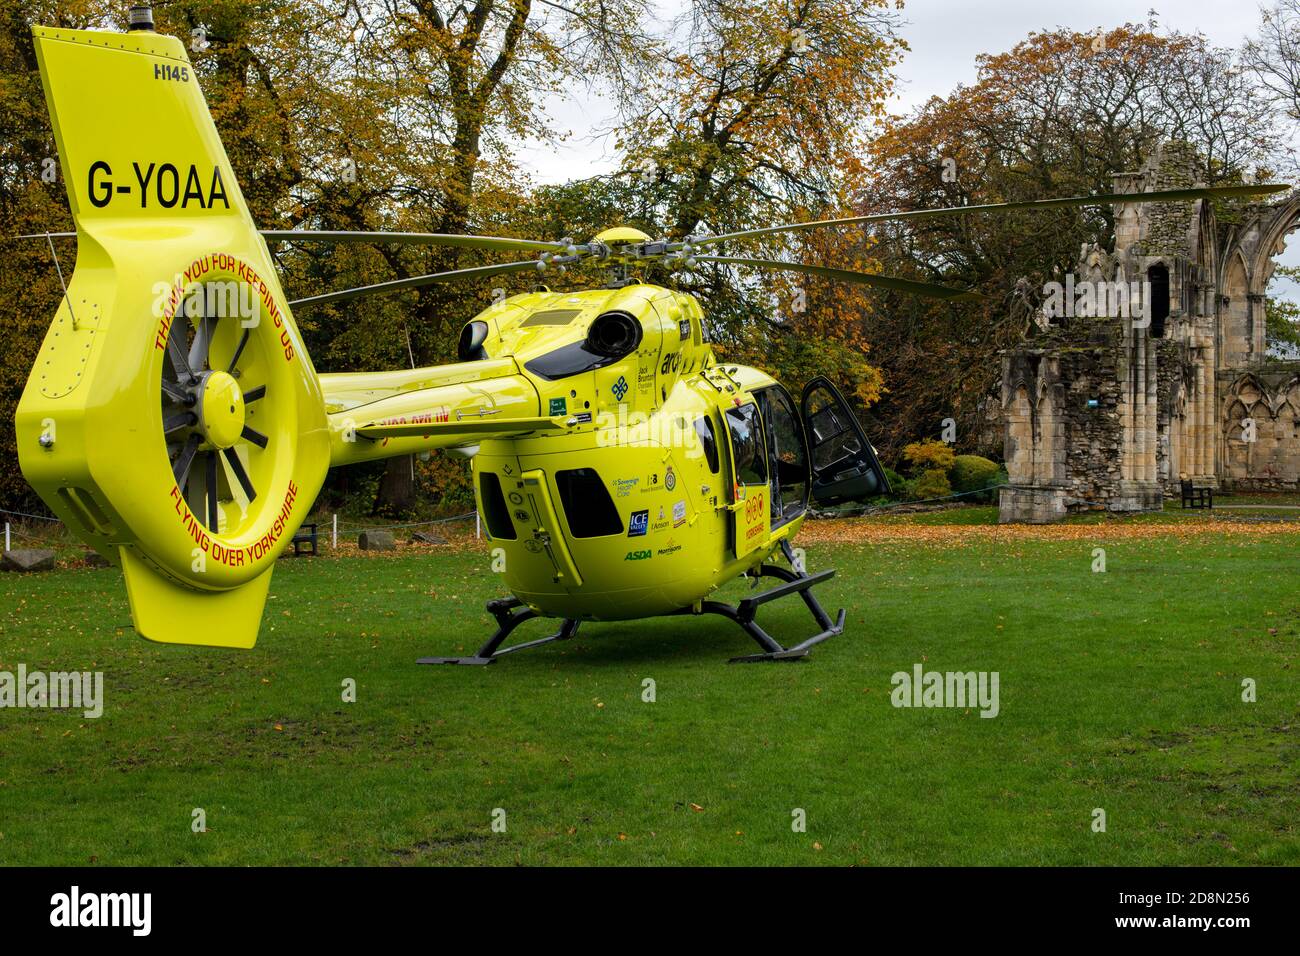 L'hélicoptère Yorkshire Air Ambulance H145 debout dans le parc de l'abbaye de St Mary. Museum Gardens, ville de York, Royaume-Uni Banque D'Images